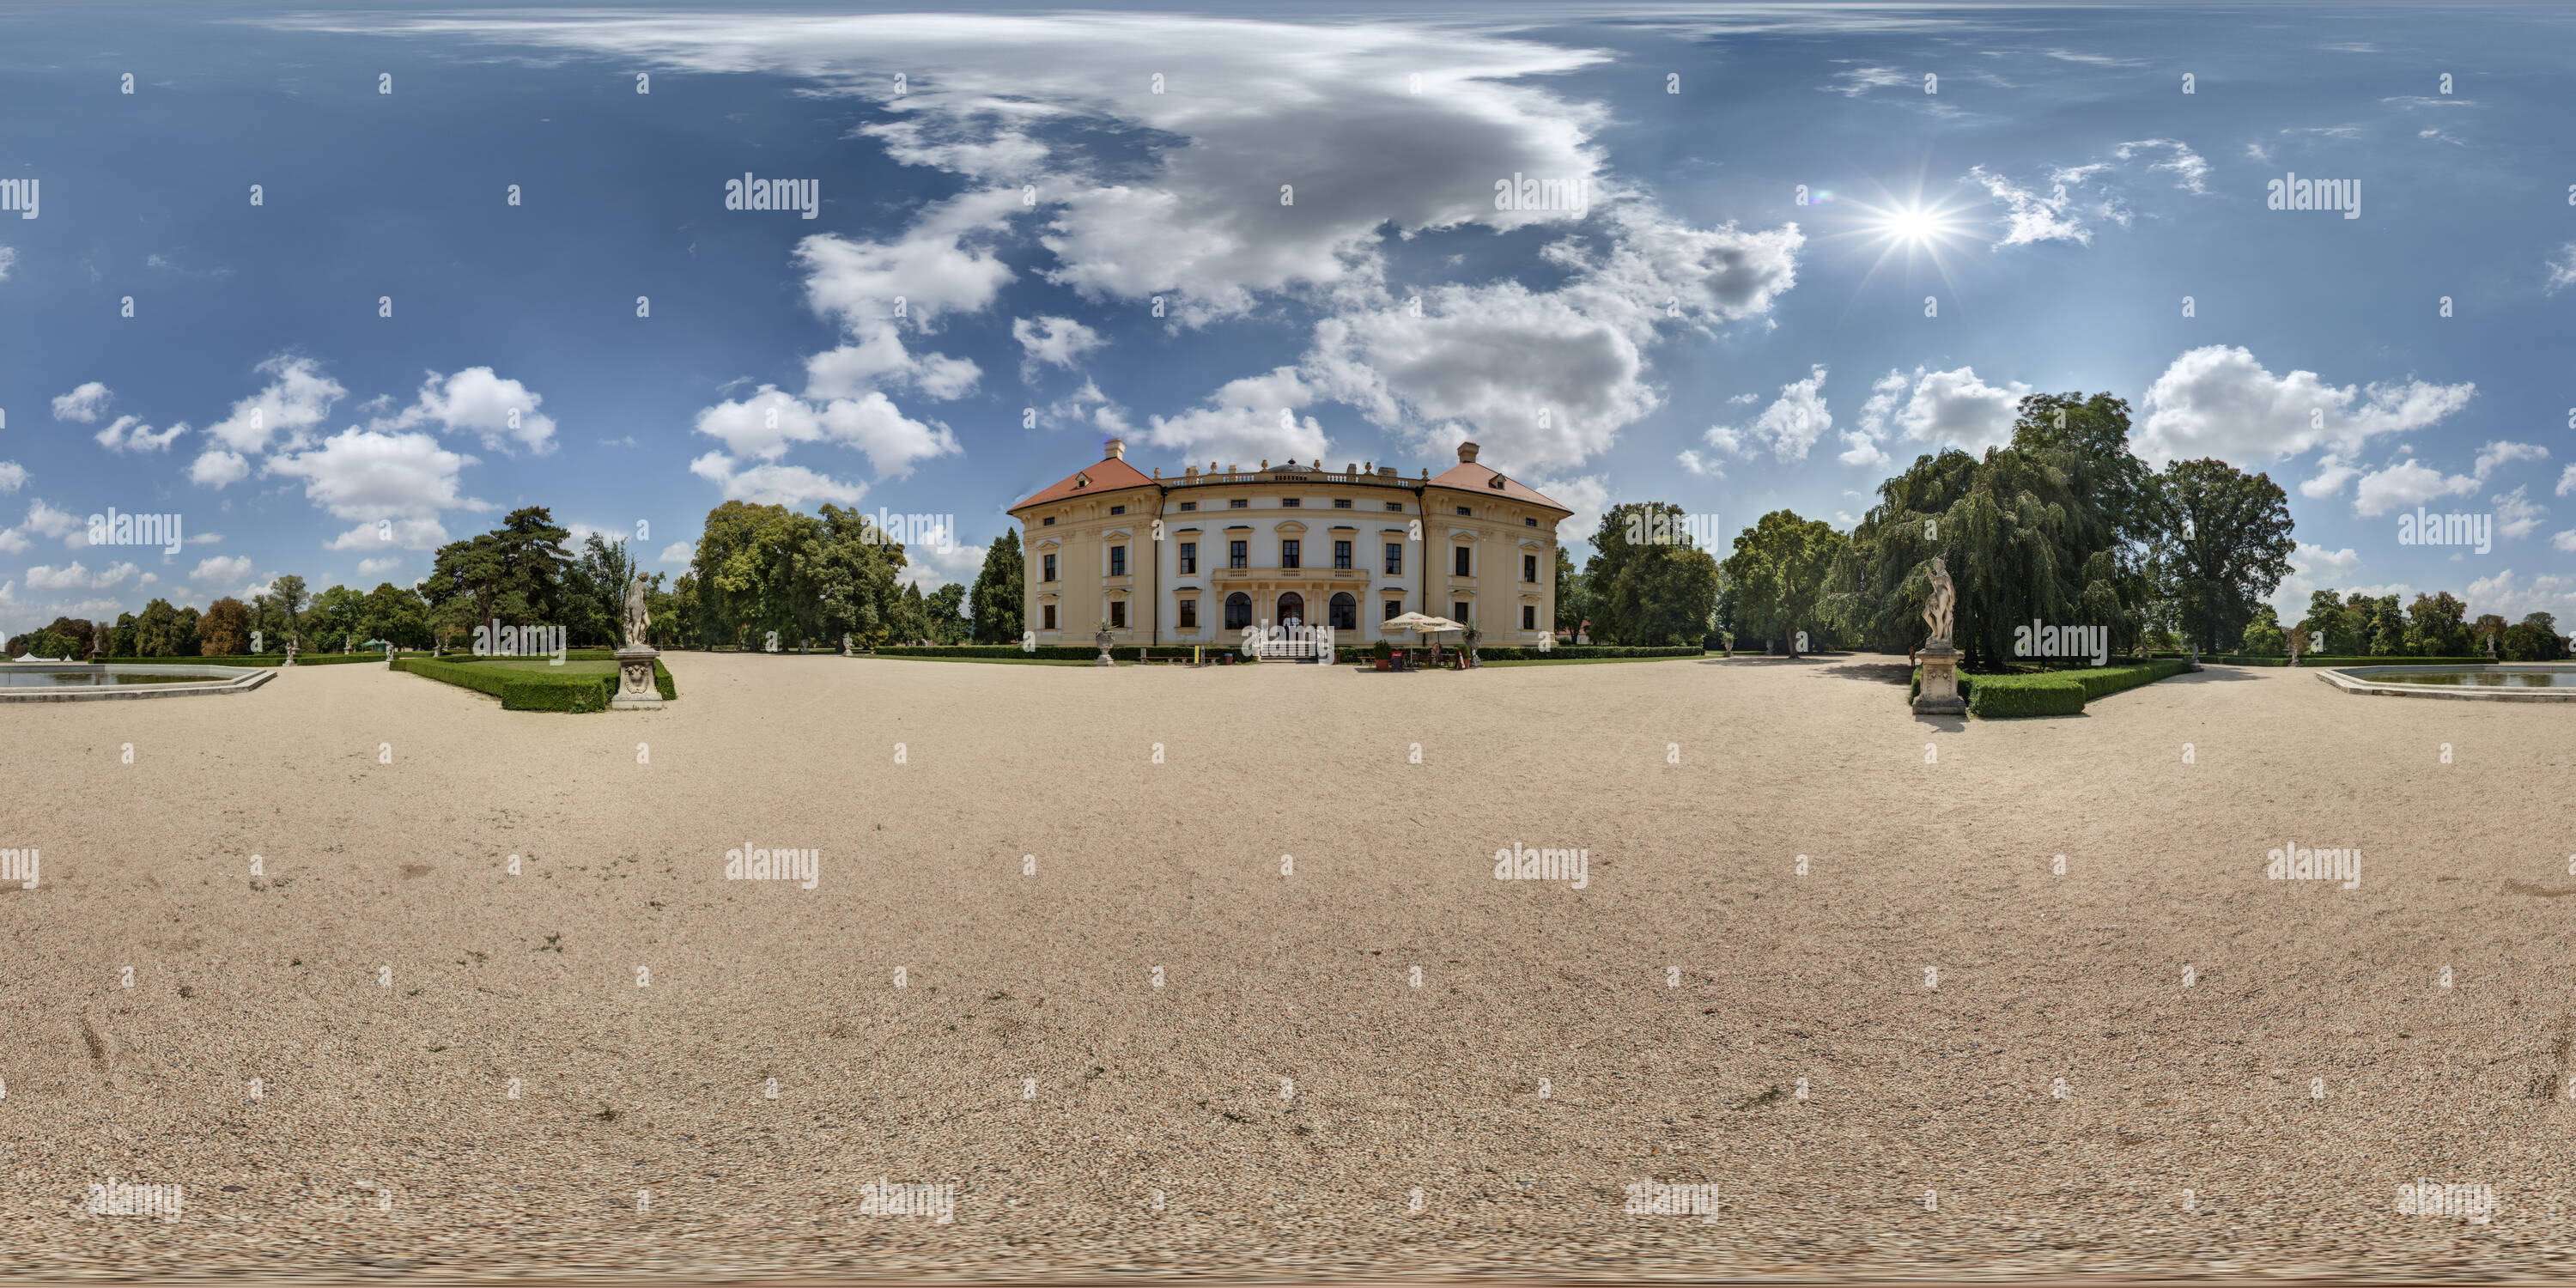 Vue panoramique à 360° de République tchèque, Slavkov u Brna, Parc du Château de Slavkov